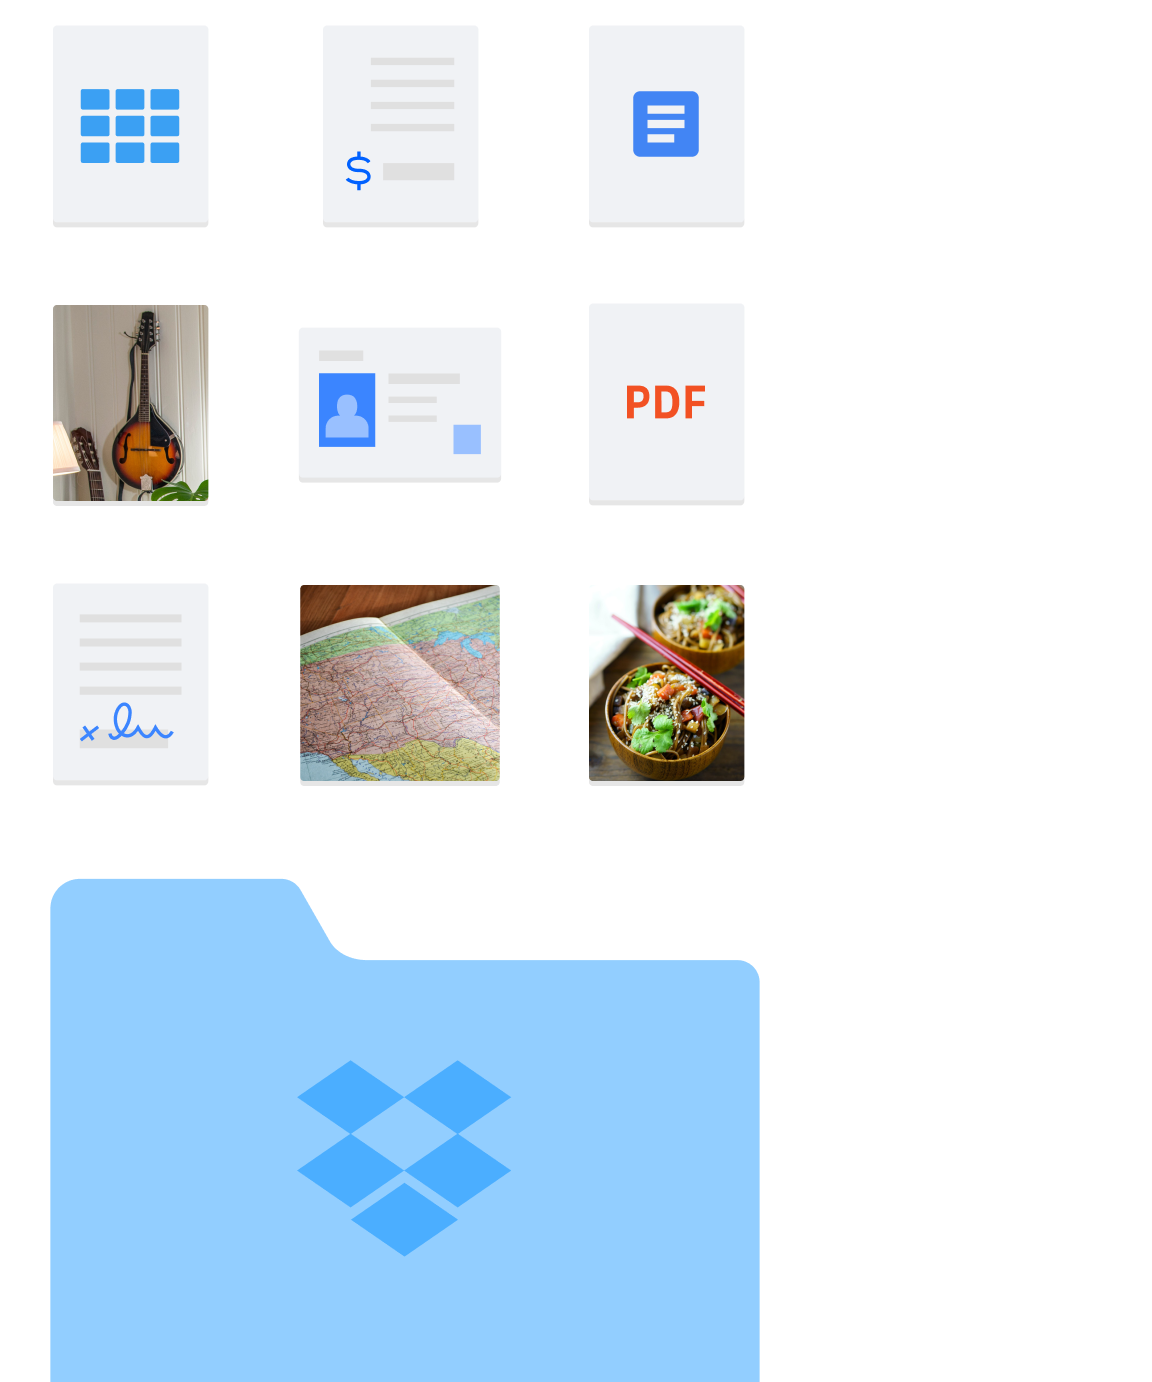 Dropbox 中存放不同資料夾和檔案類型 (例如圖片檔和文件檔) 的圖片。